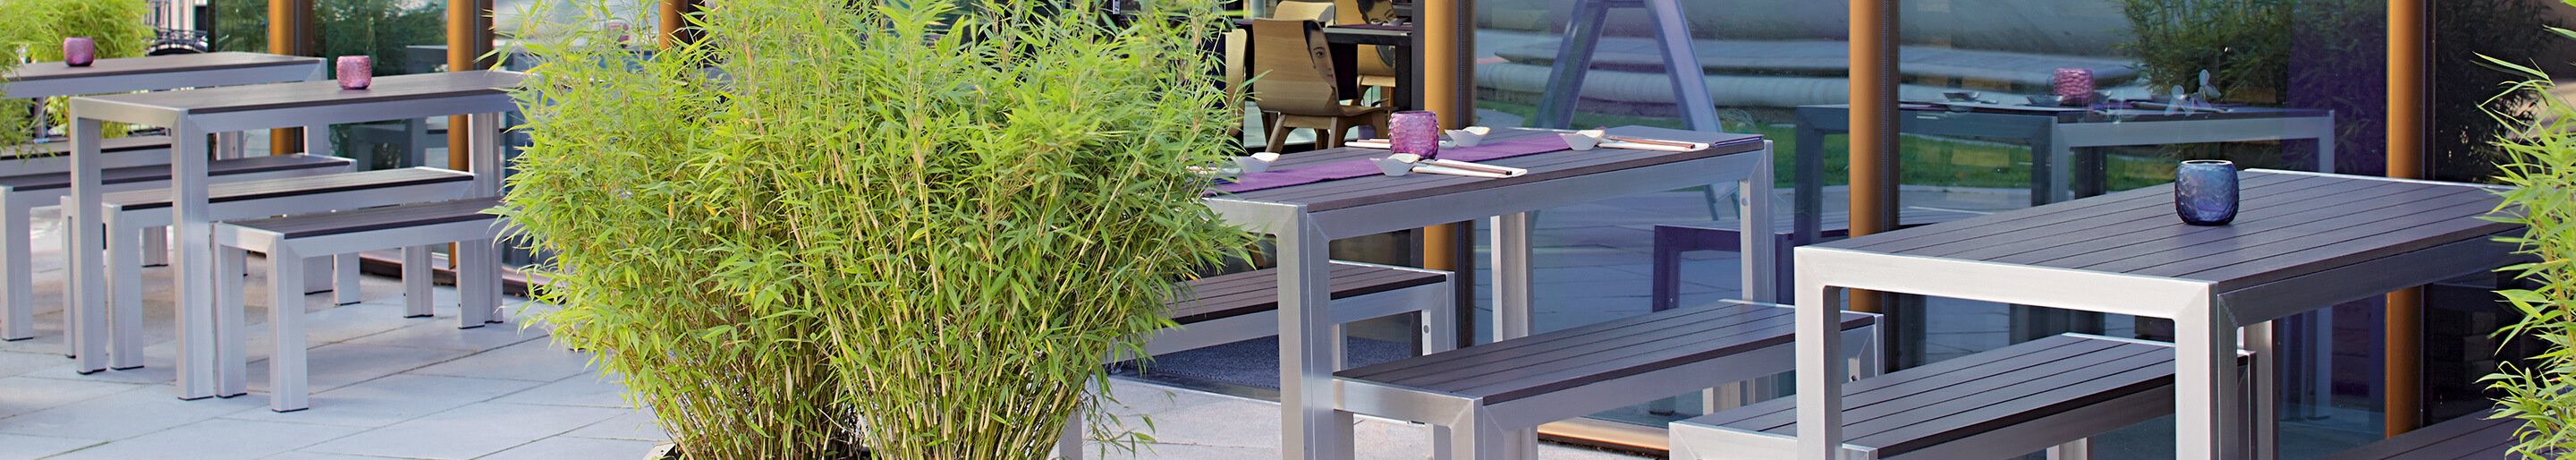 Outdoor Tisch-Bank-Kombinationen für Gastronomie und Hotellerie